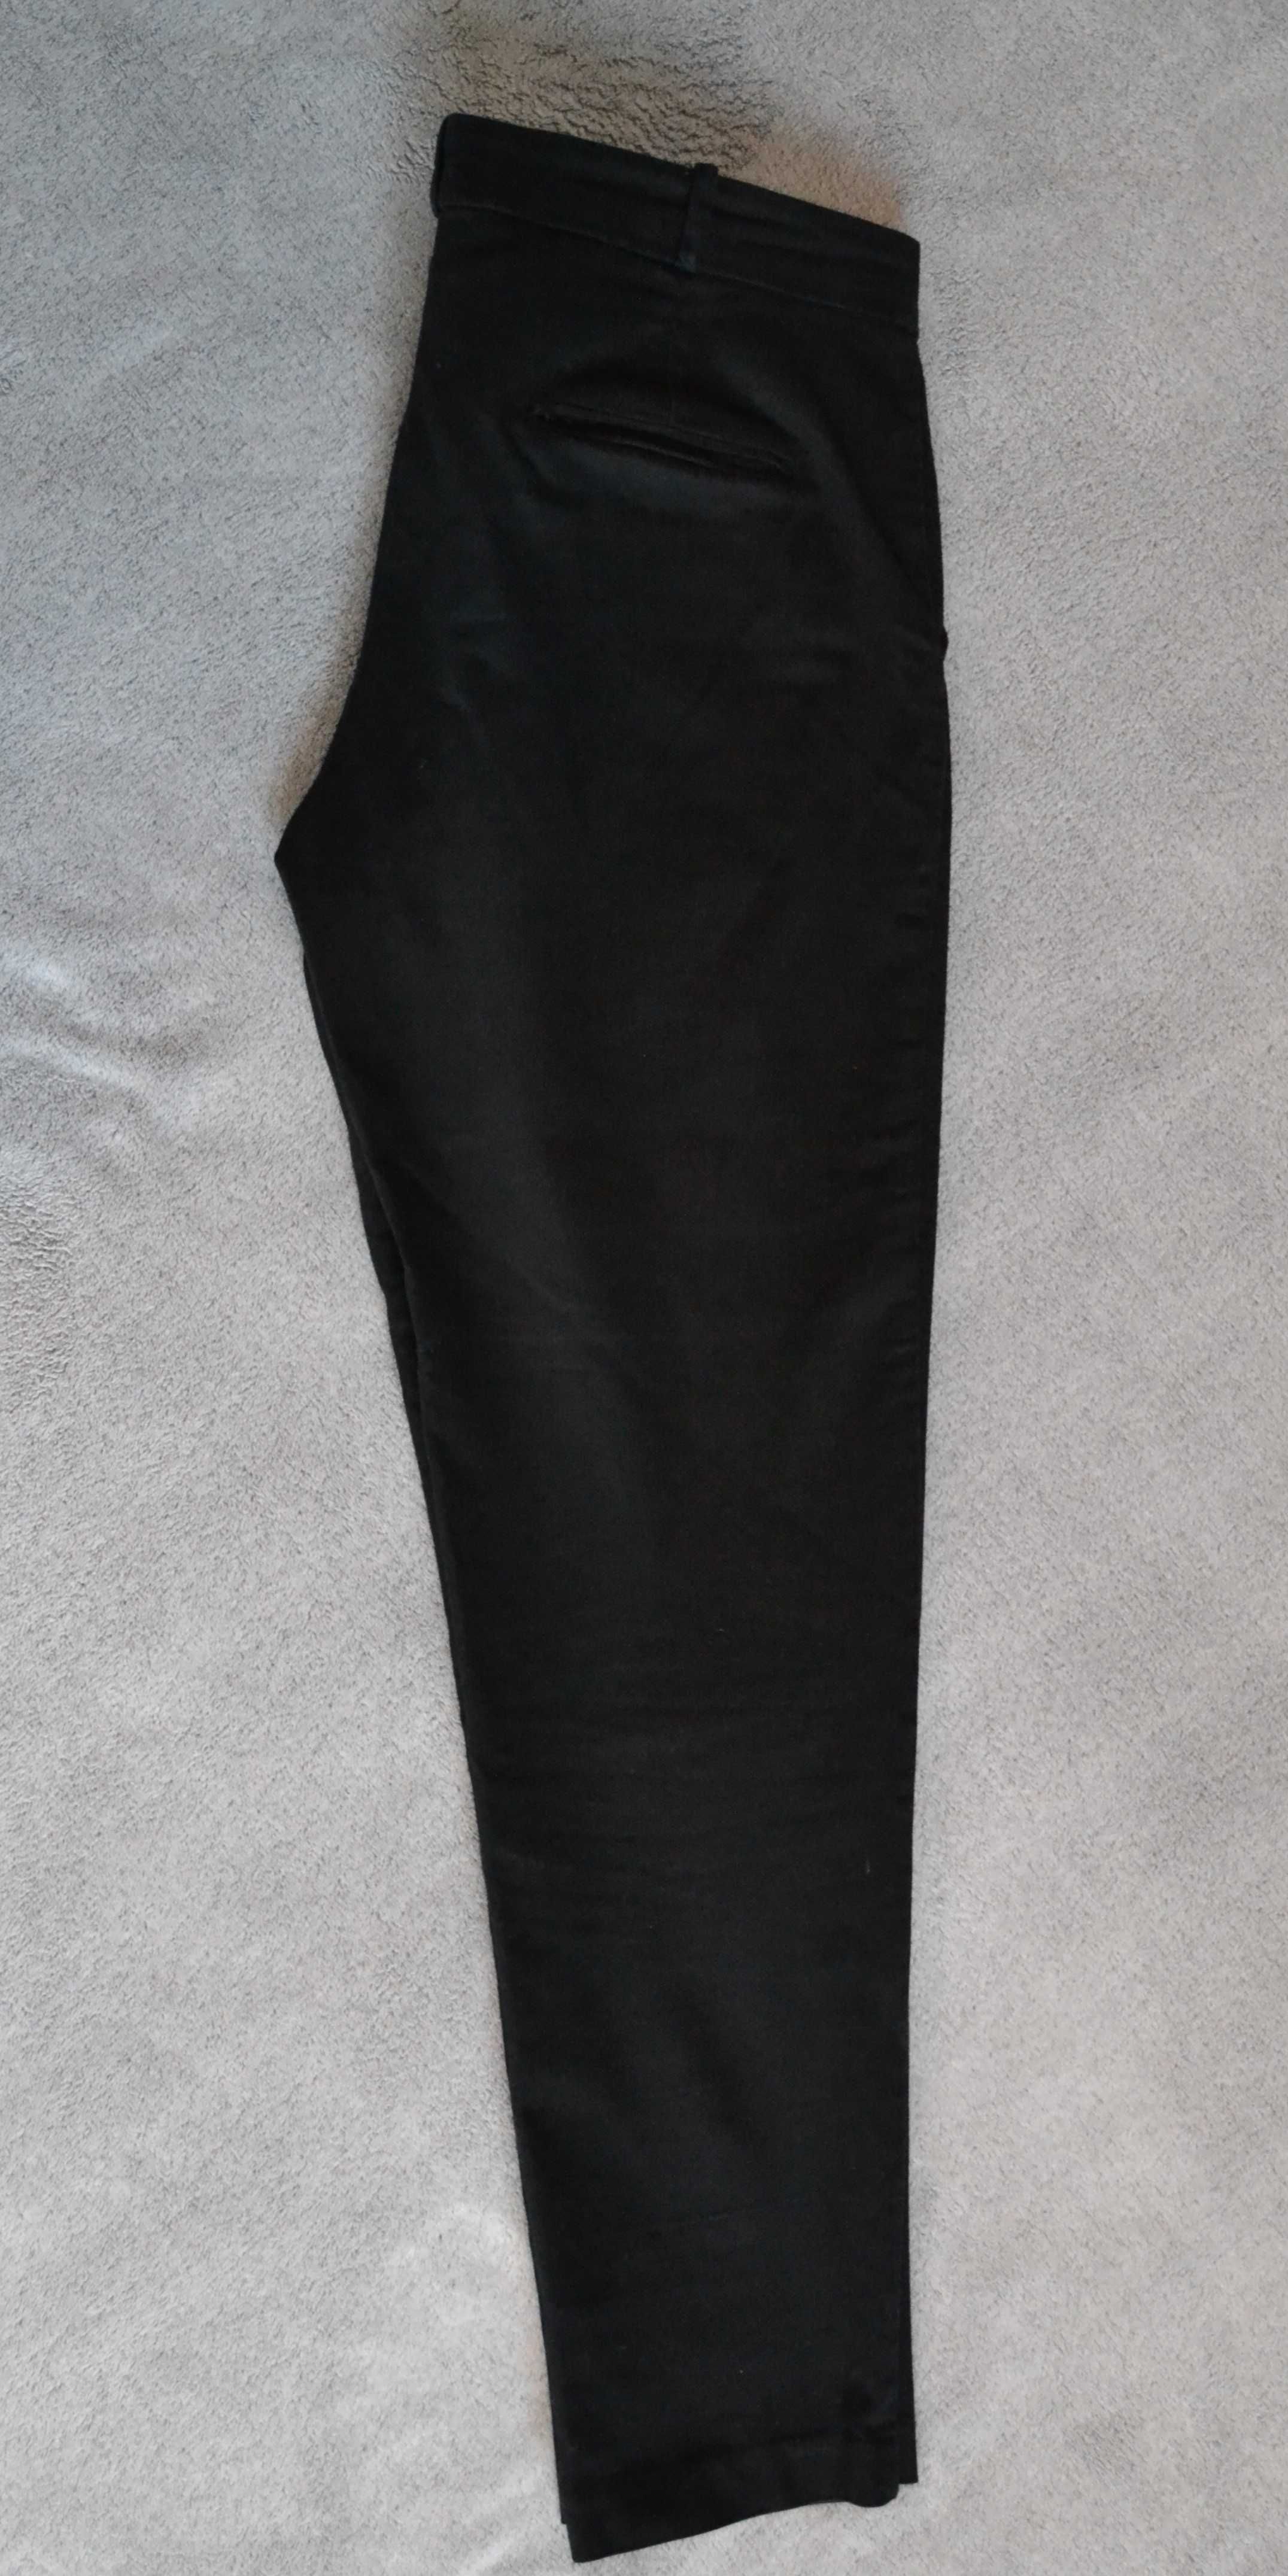 Spodnie damskie MANGO cygaretki, rozm.38 czarne